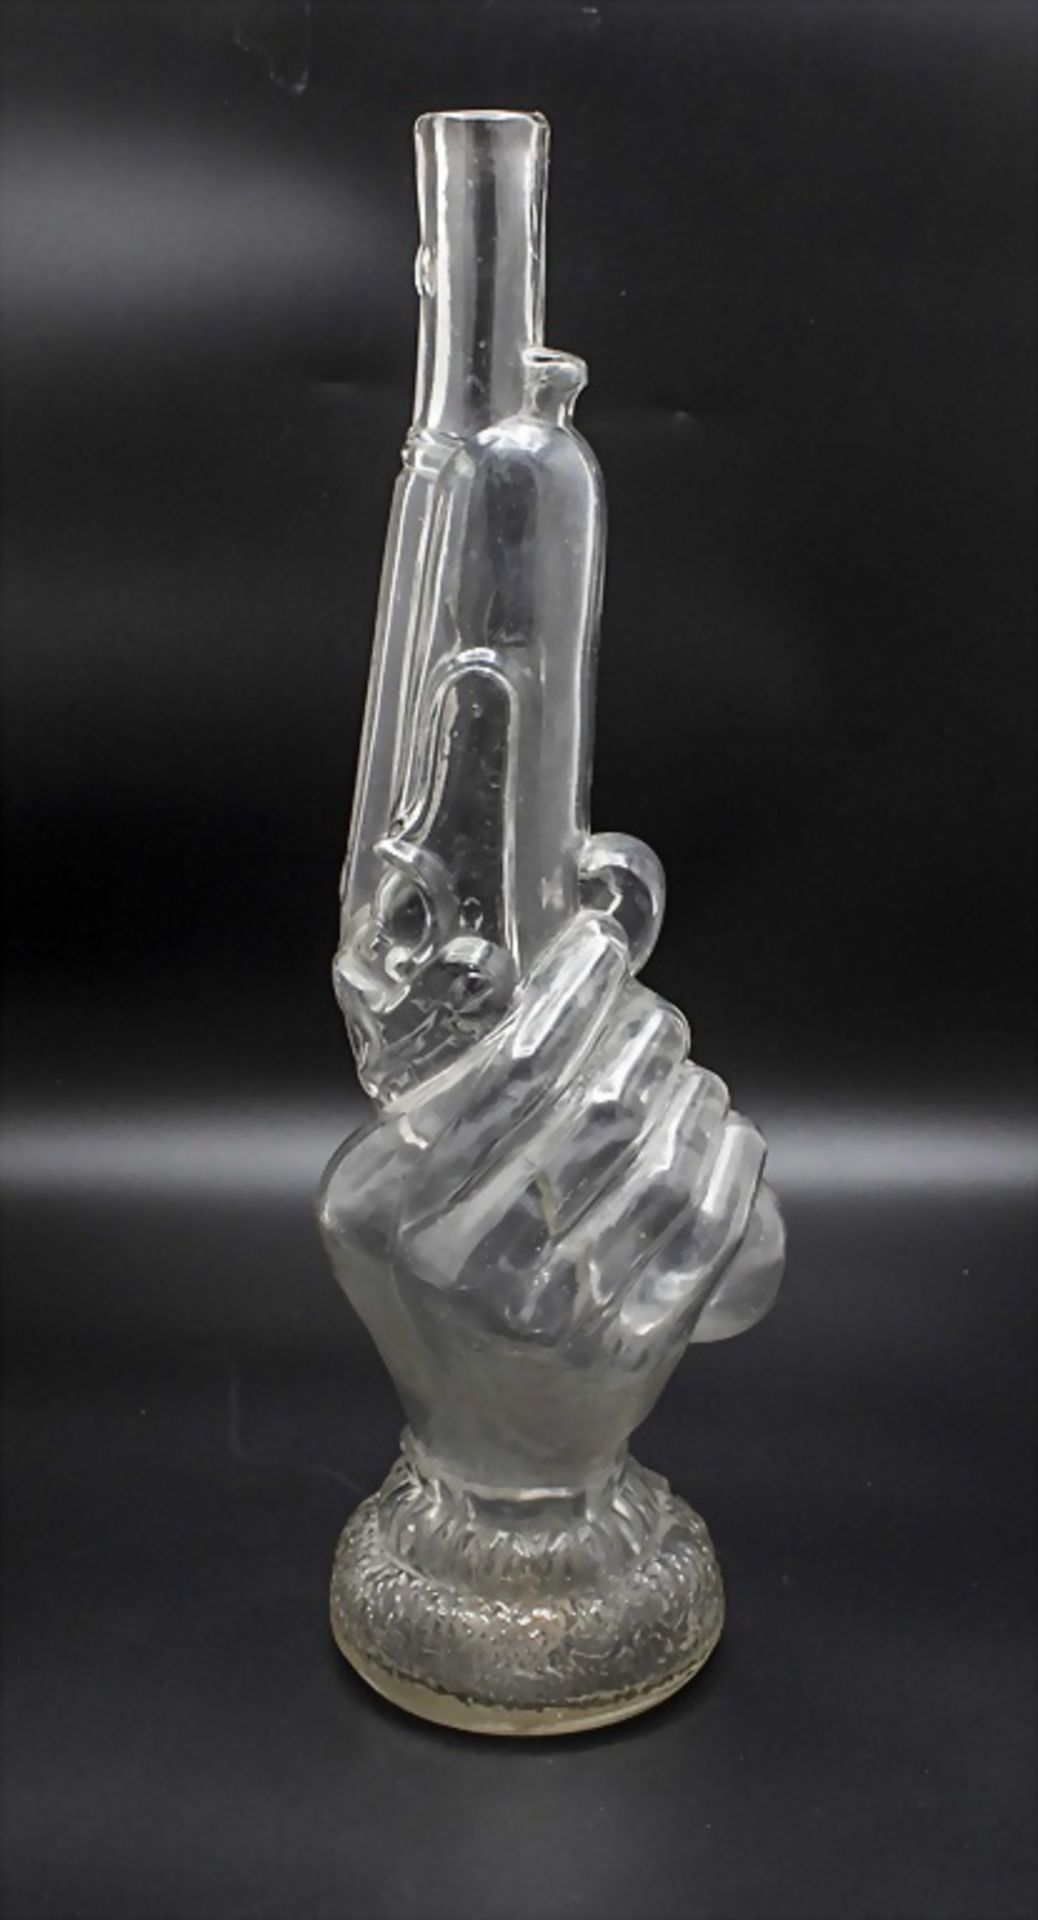 Glasflasche 'Hand mit Pistole' / Bouteille à sujet LEGRAS 'Main au pistolet' / A glass bottle ...